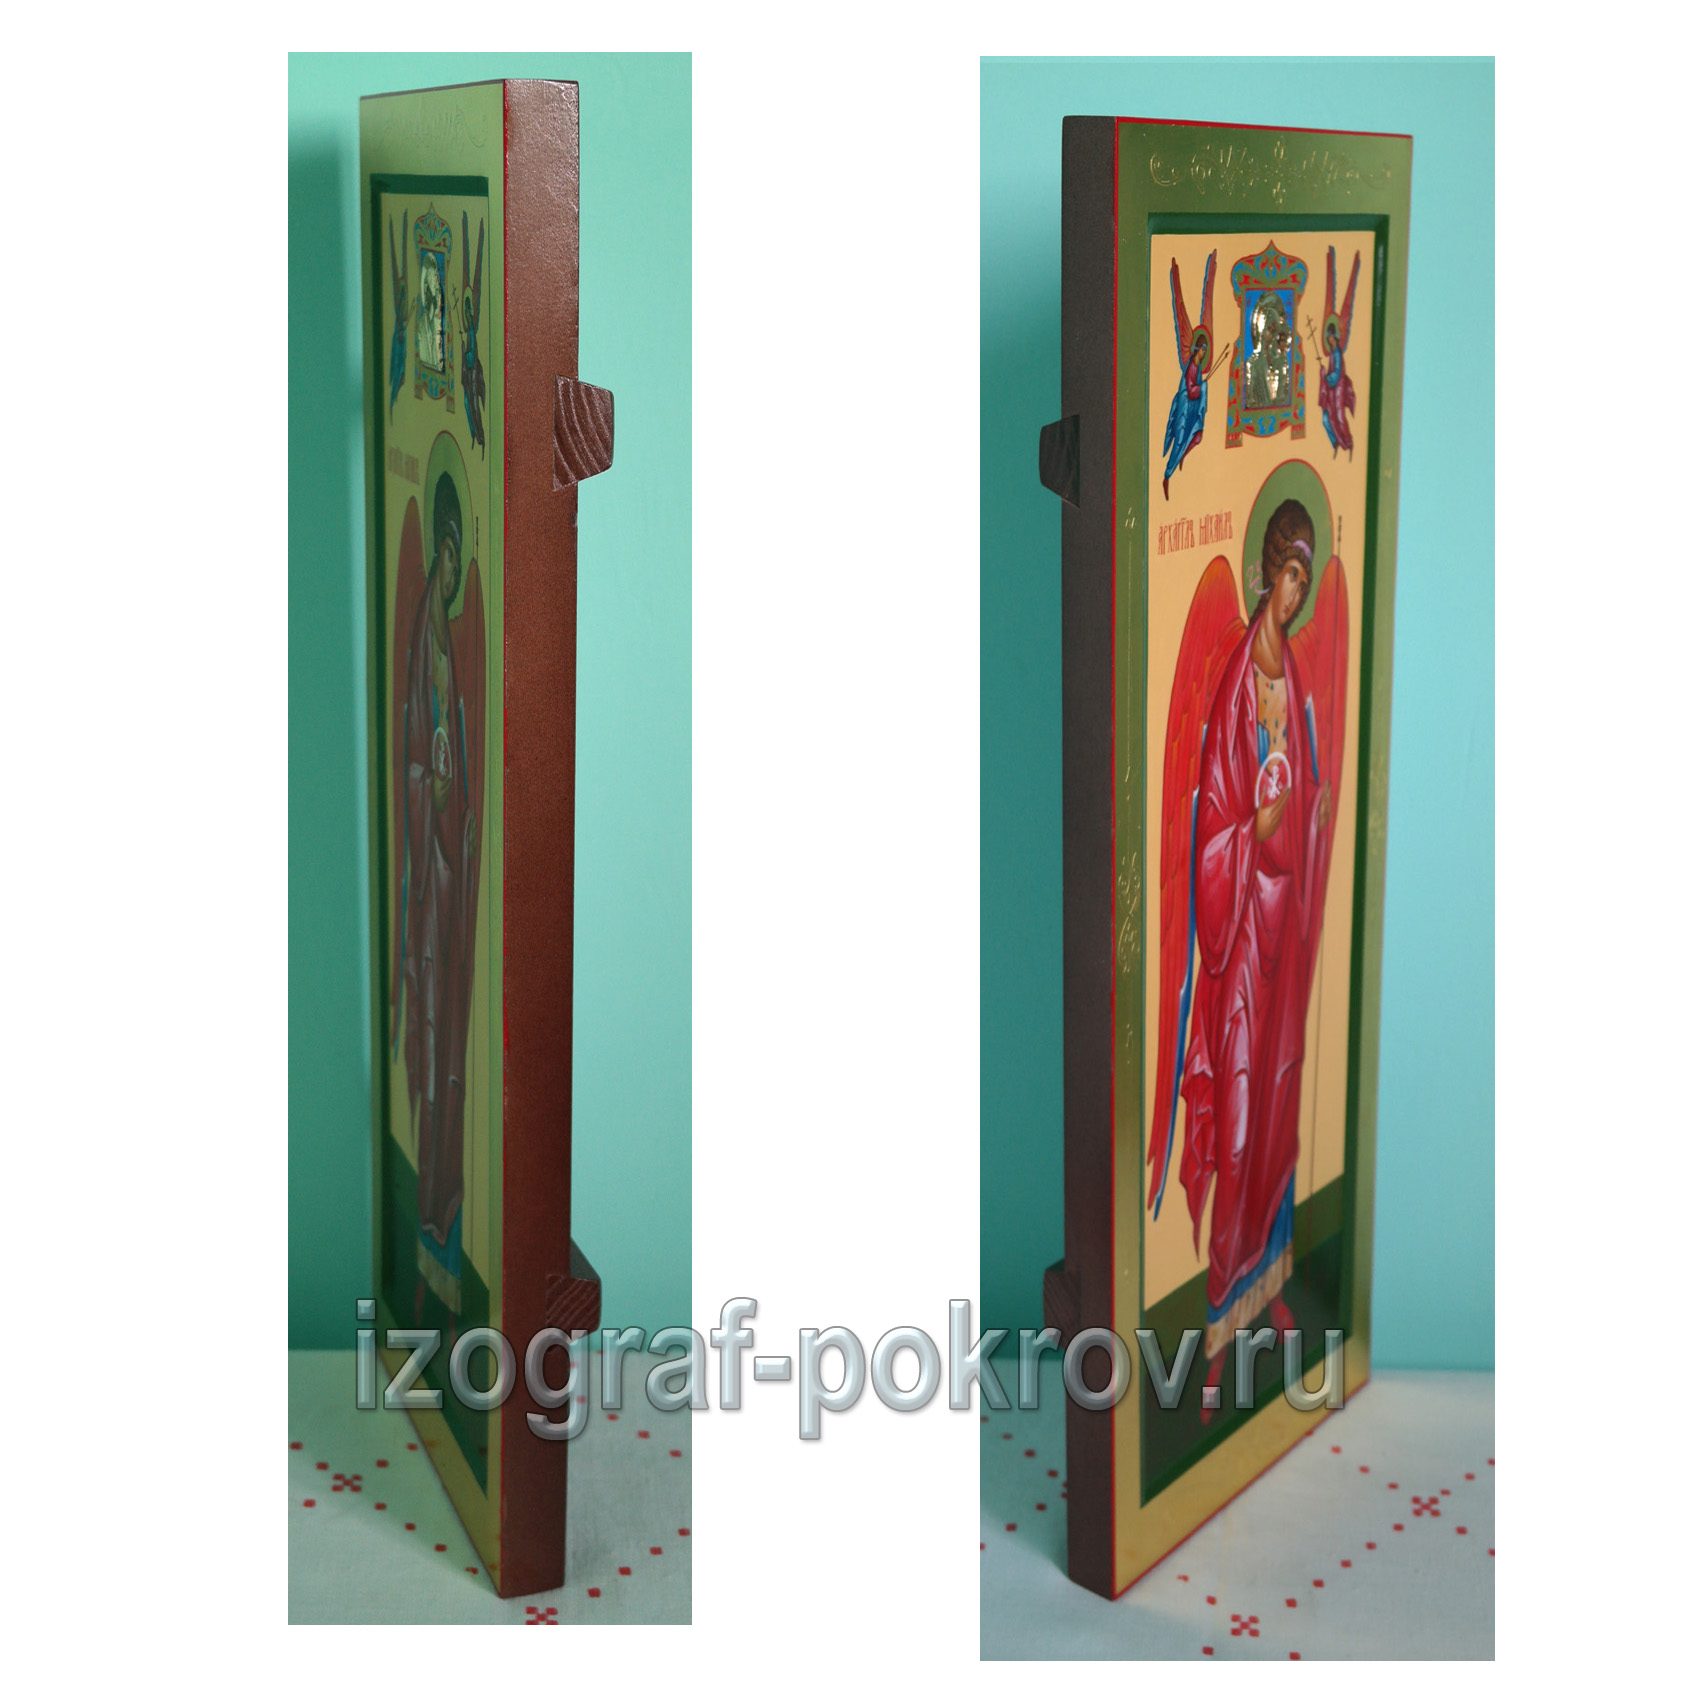 Мерная икона Архангела Михаила с миниатюрой Богородицы вид сбоку